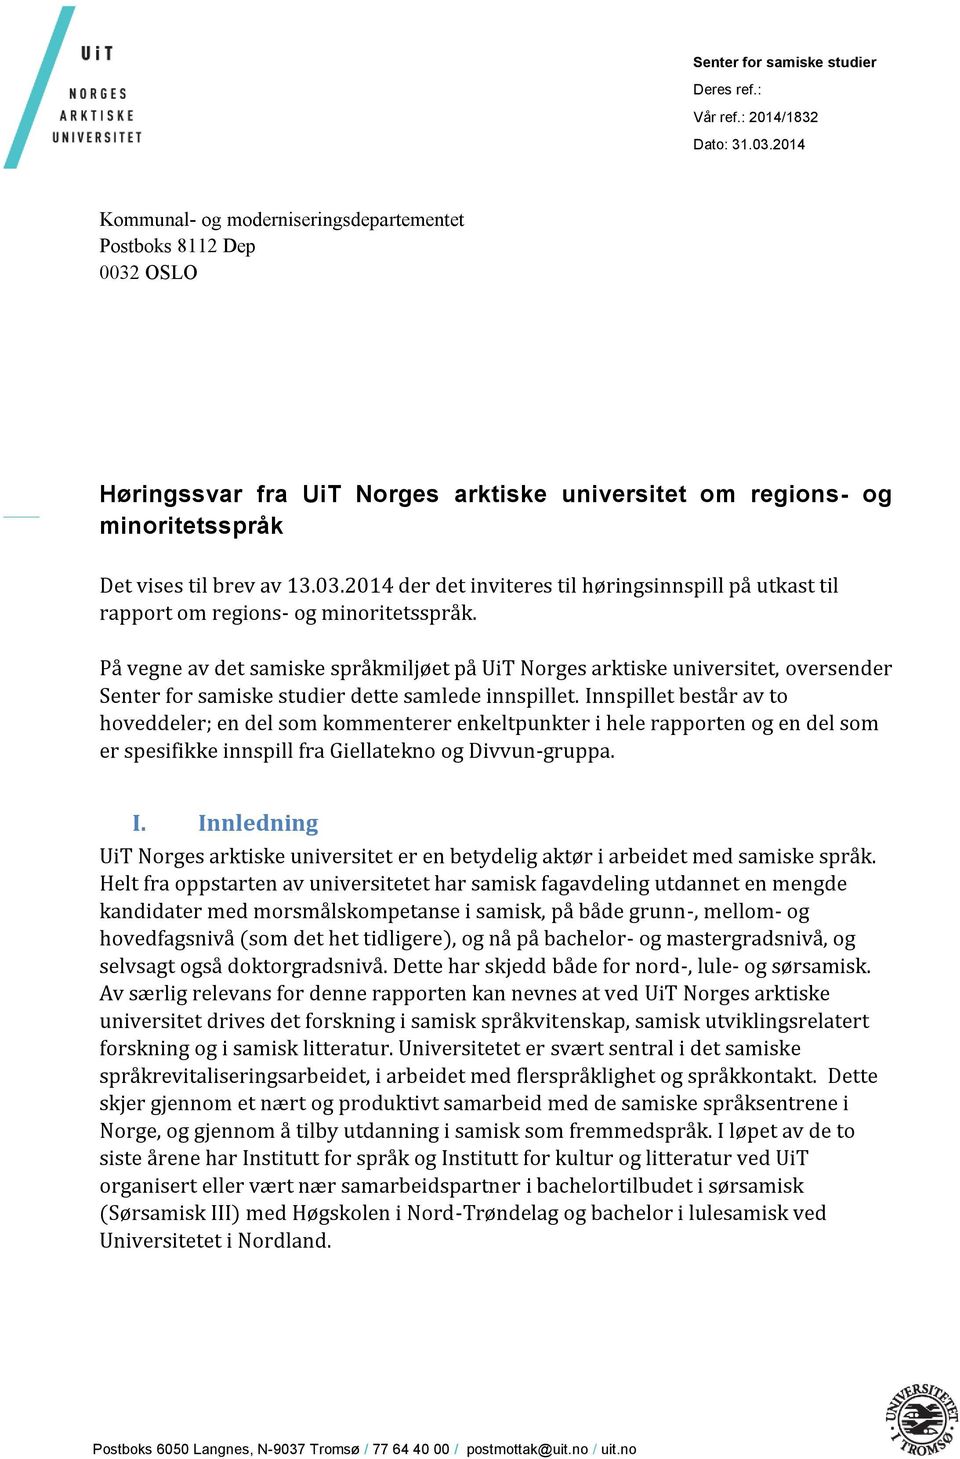 På vegne av det samiske språkmiljøet på UiT Norges arktiske universitet, oversender Senter for samiske studier dette samlede innspillet.